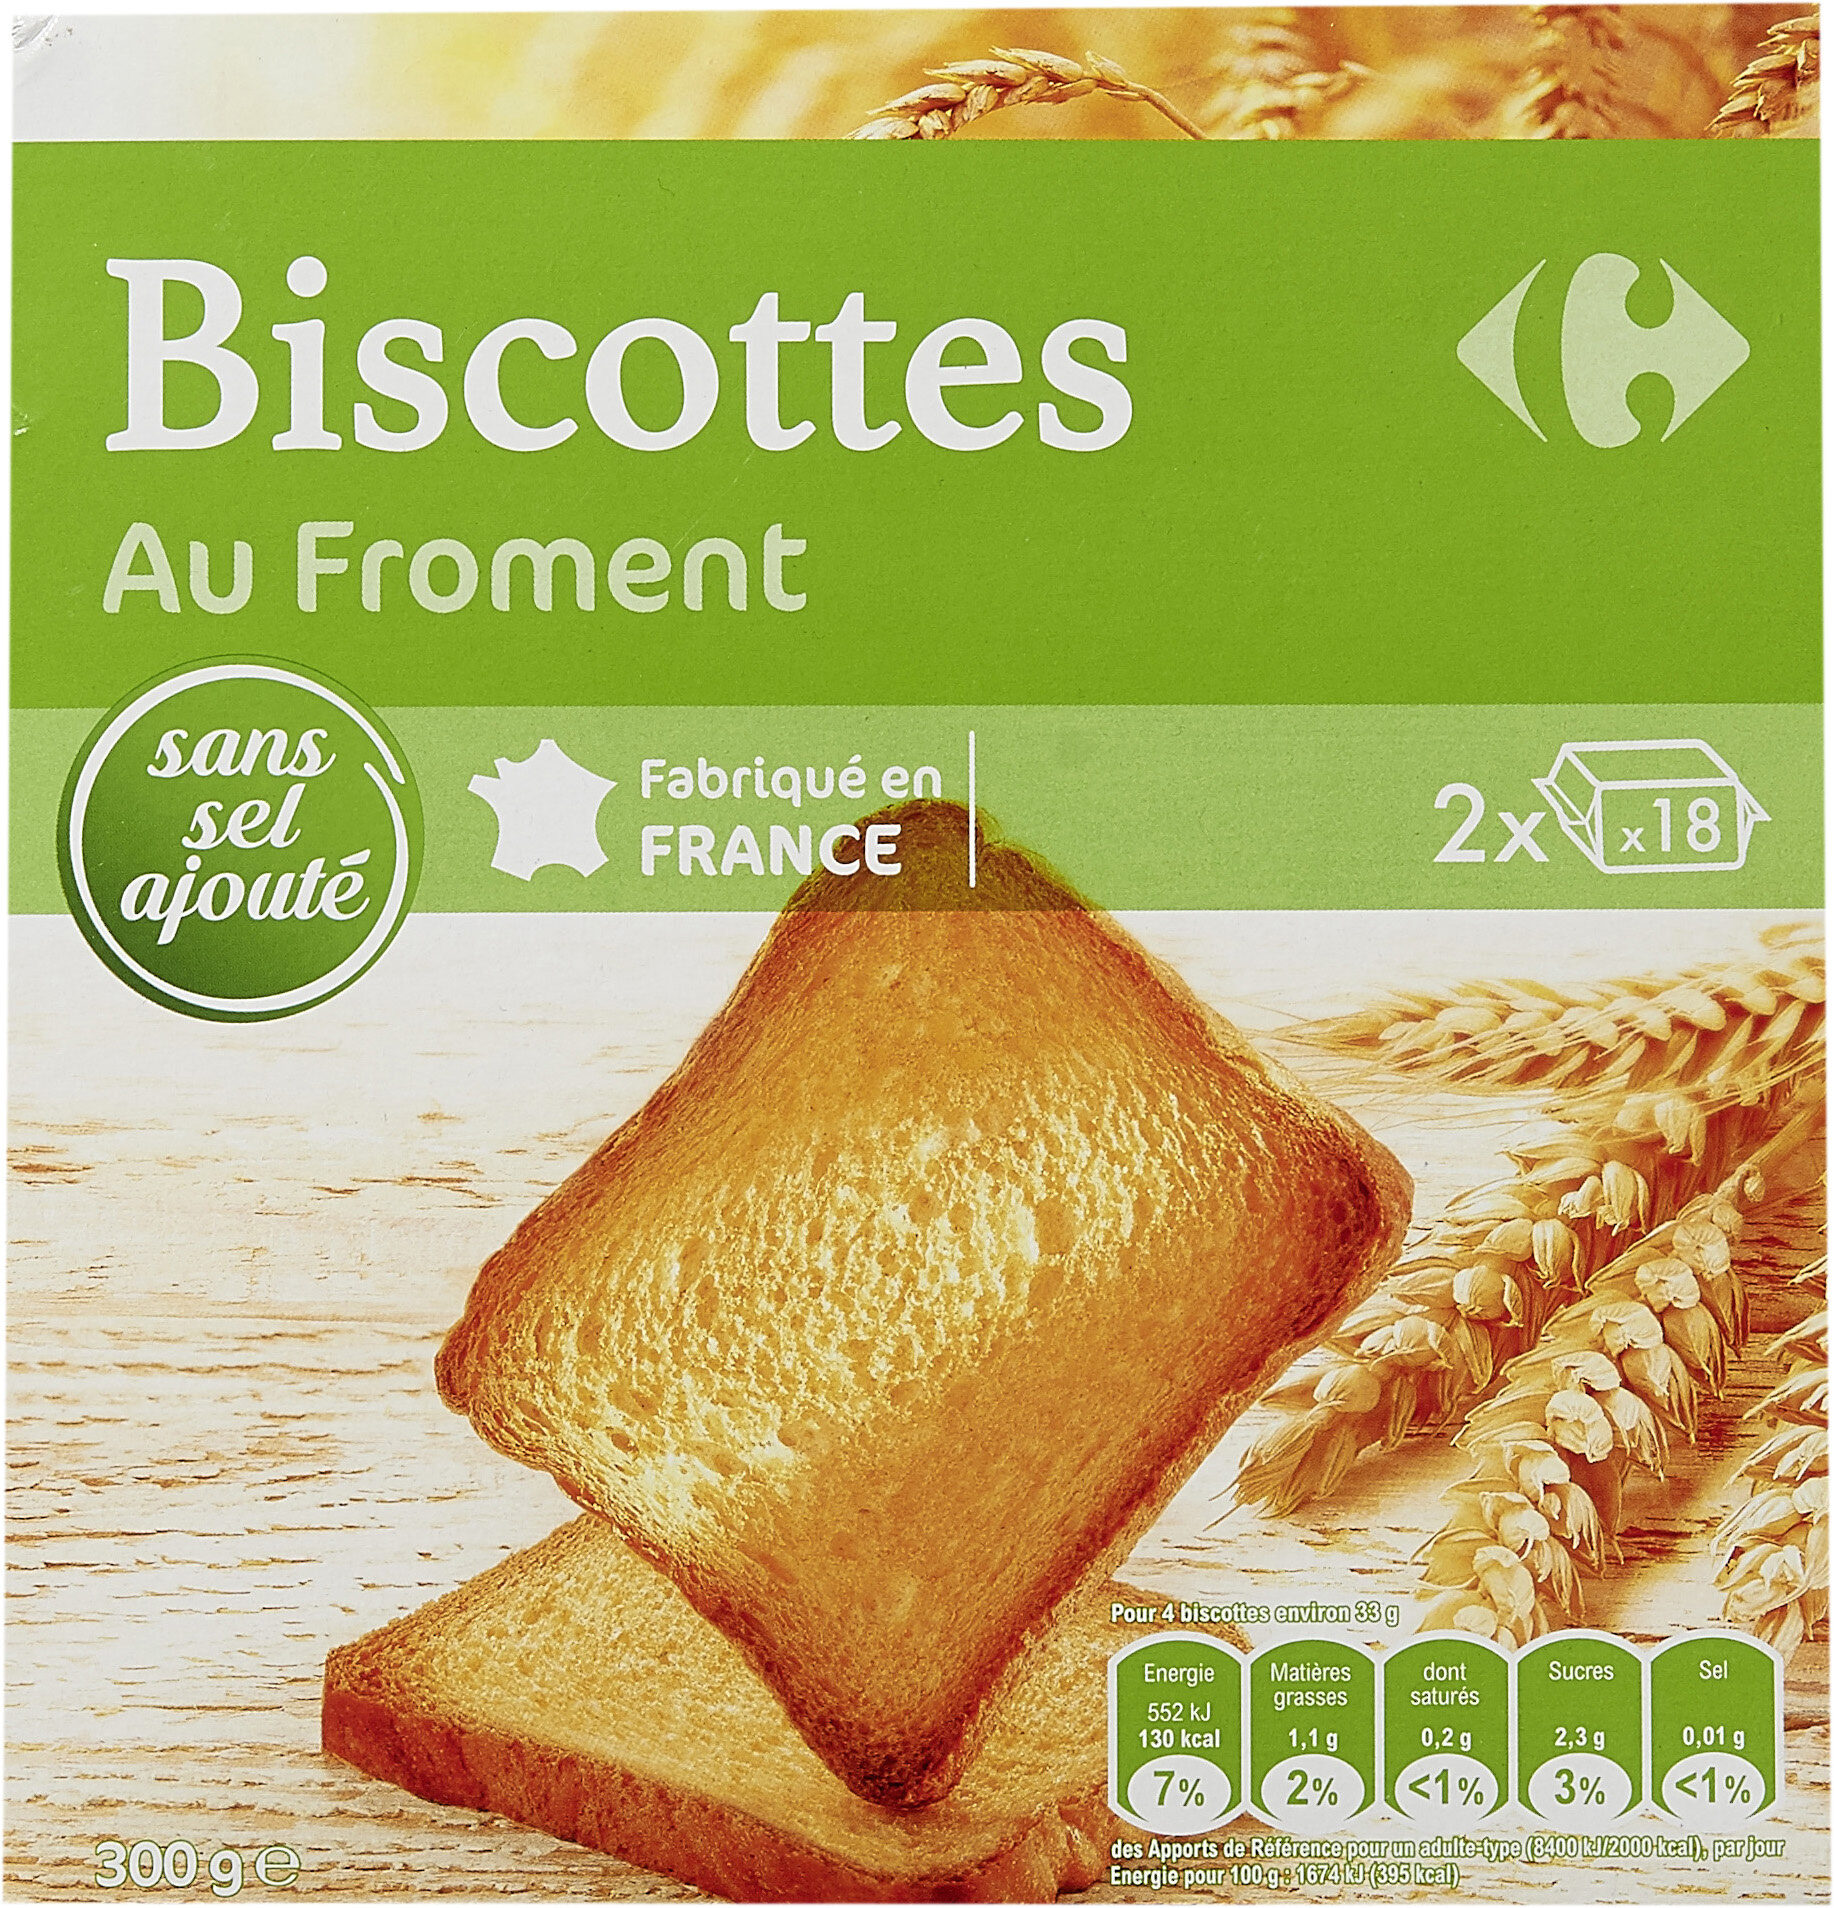 Biscottes Au Froment sans sel ajouté - نتاج - fr